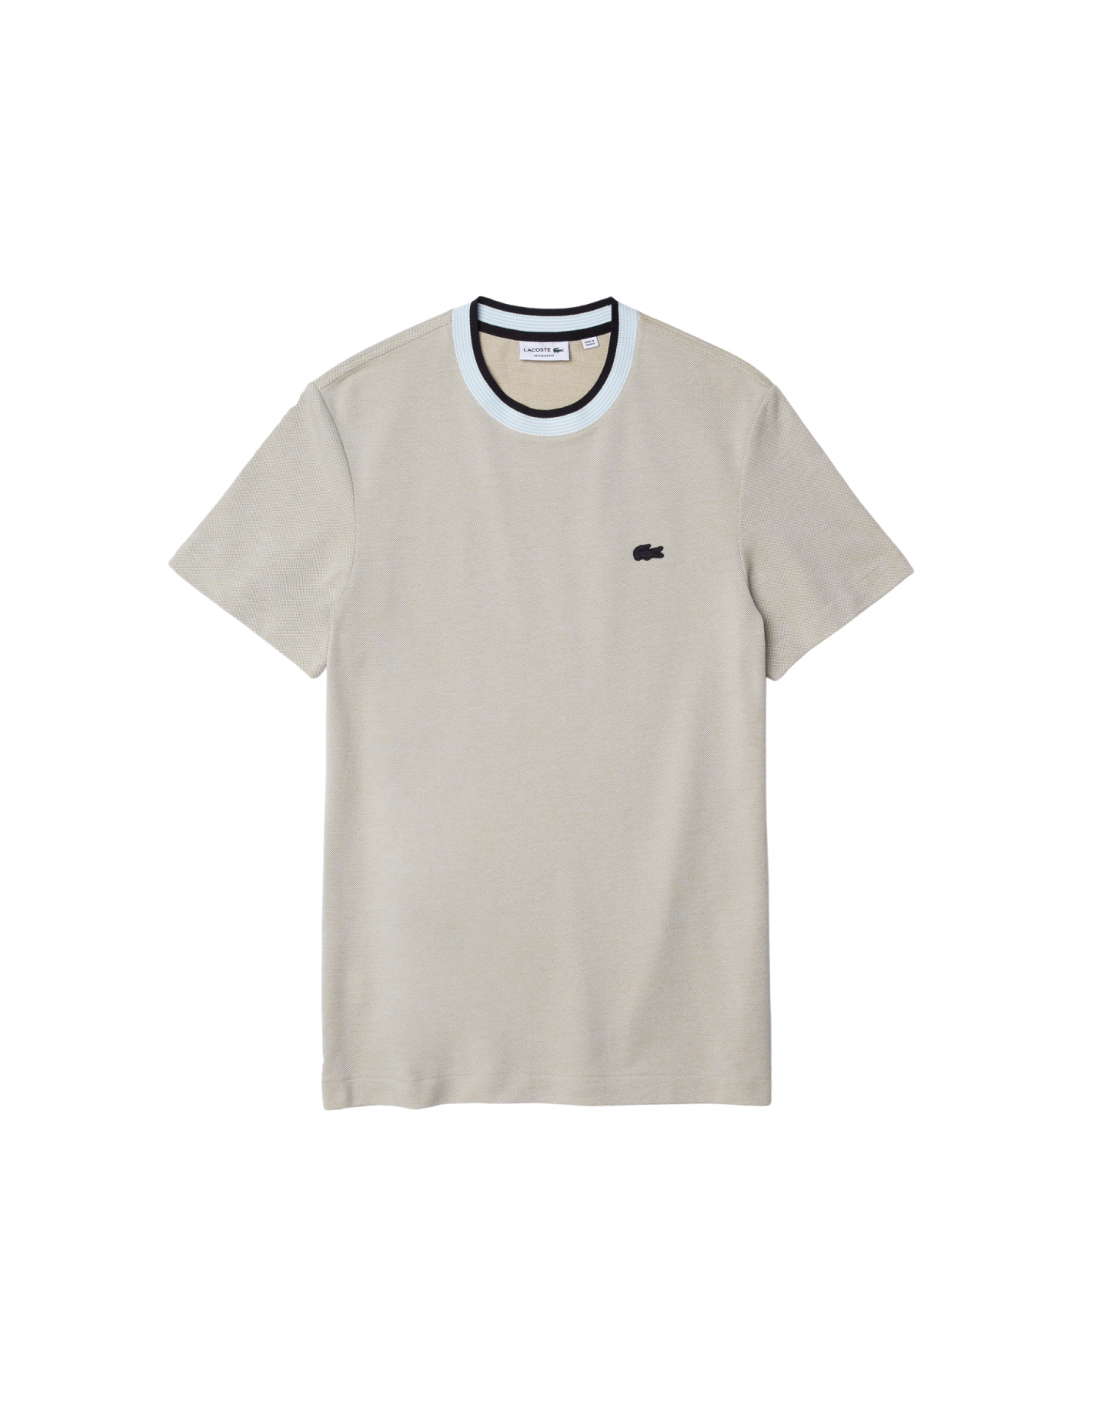 Men's Lacoste Crew Neck Premium Cotton T-shirt